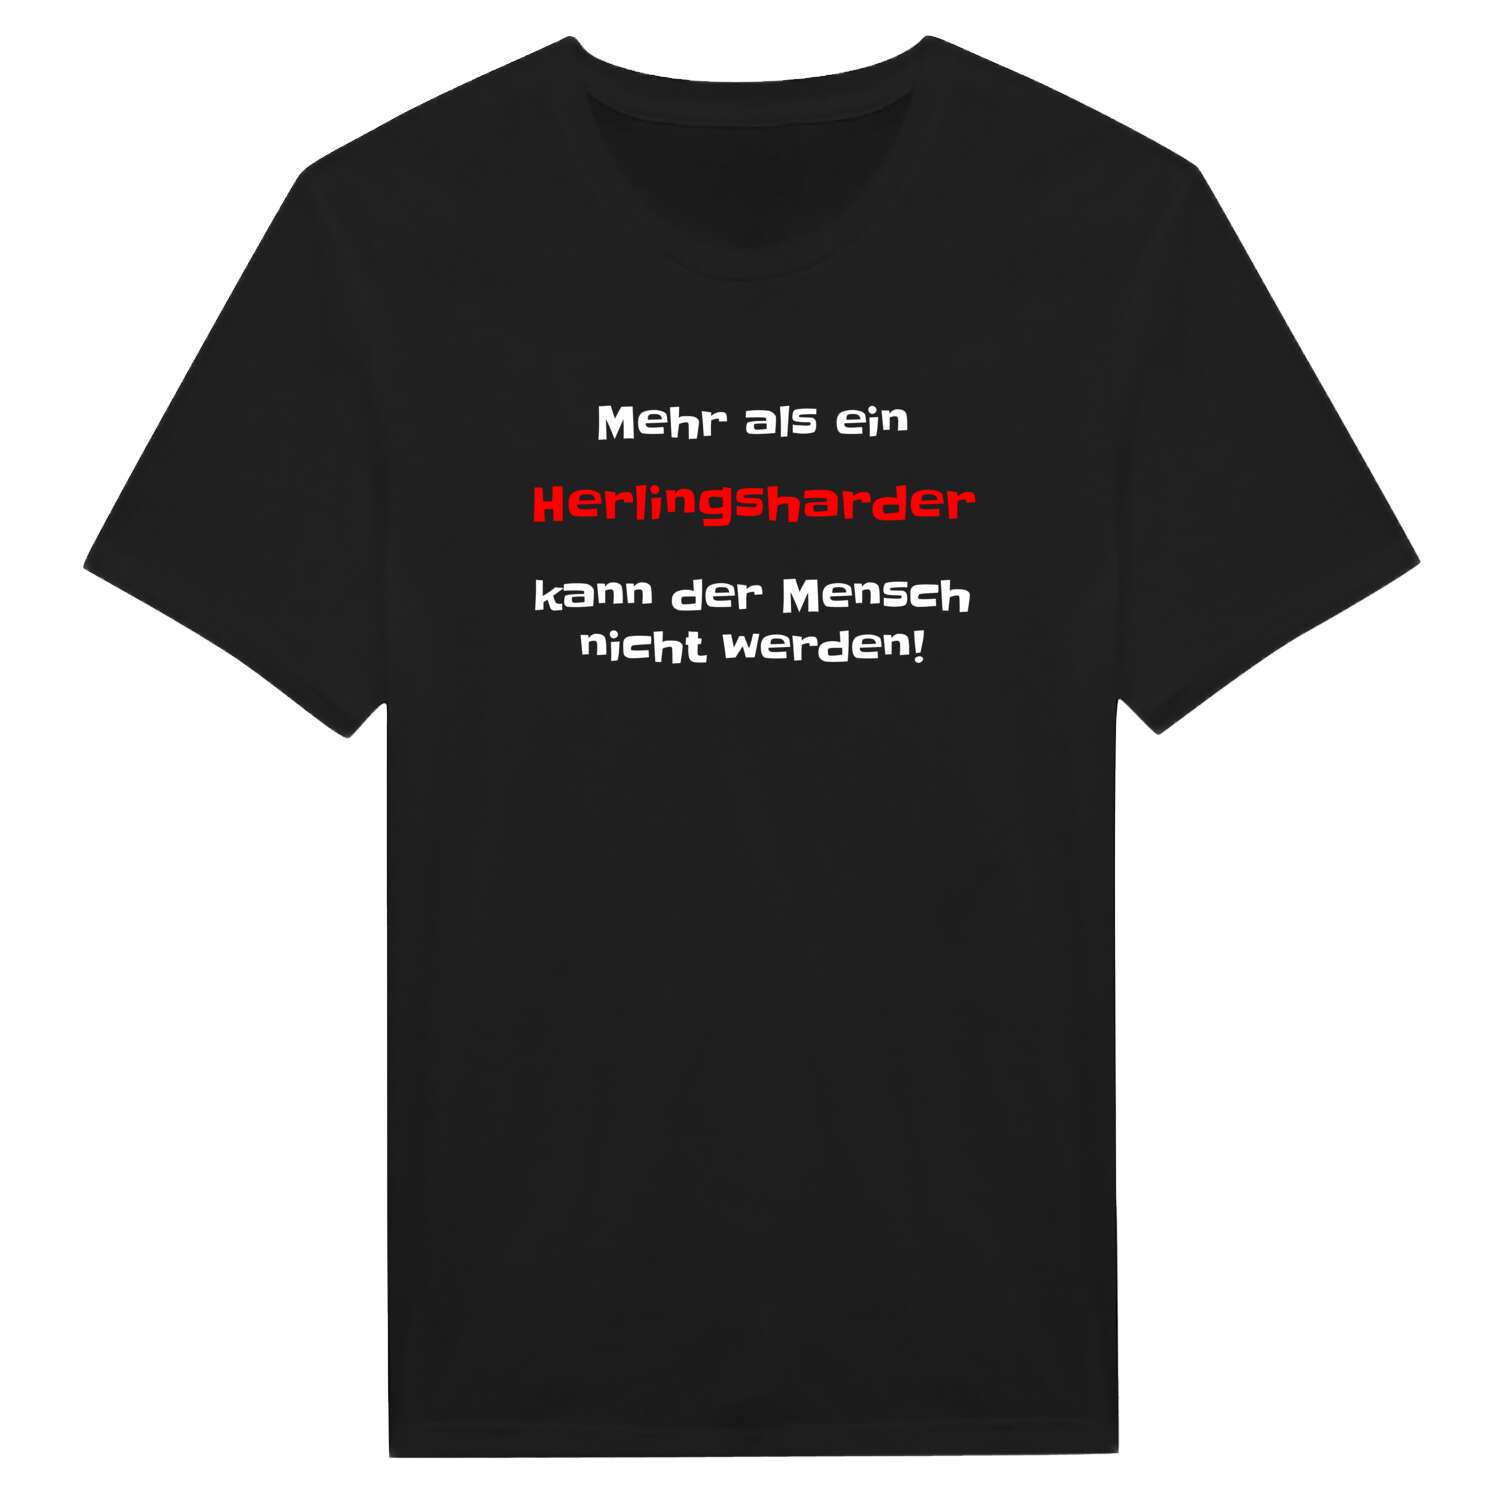 Herlingshard T-Shirt »Mehr als ein«